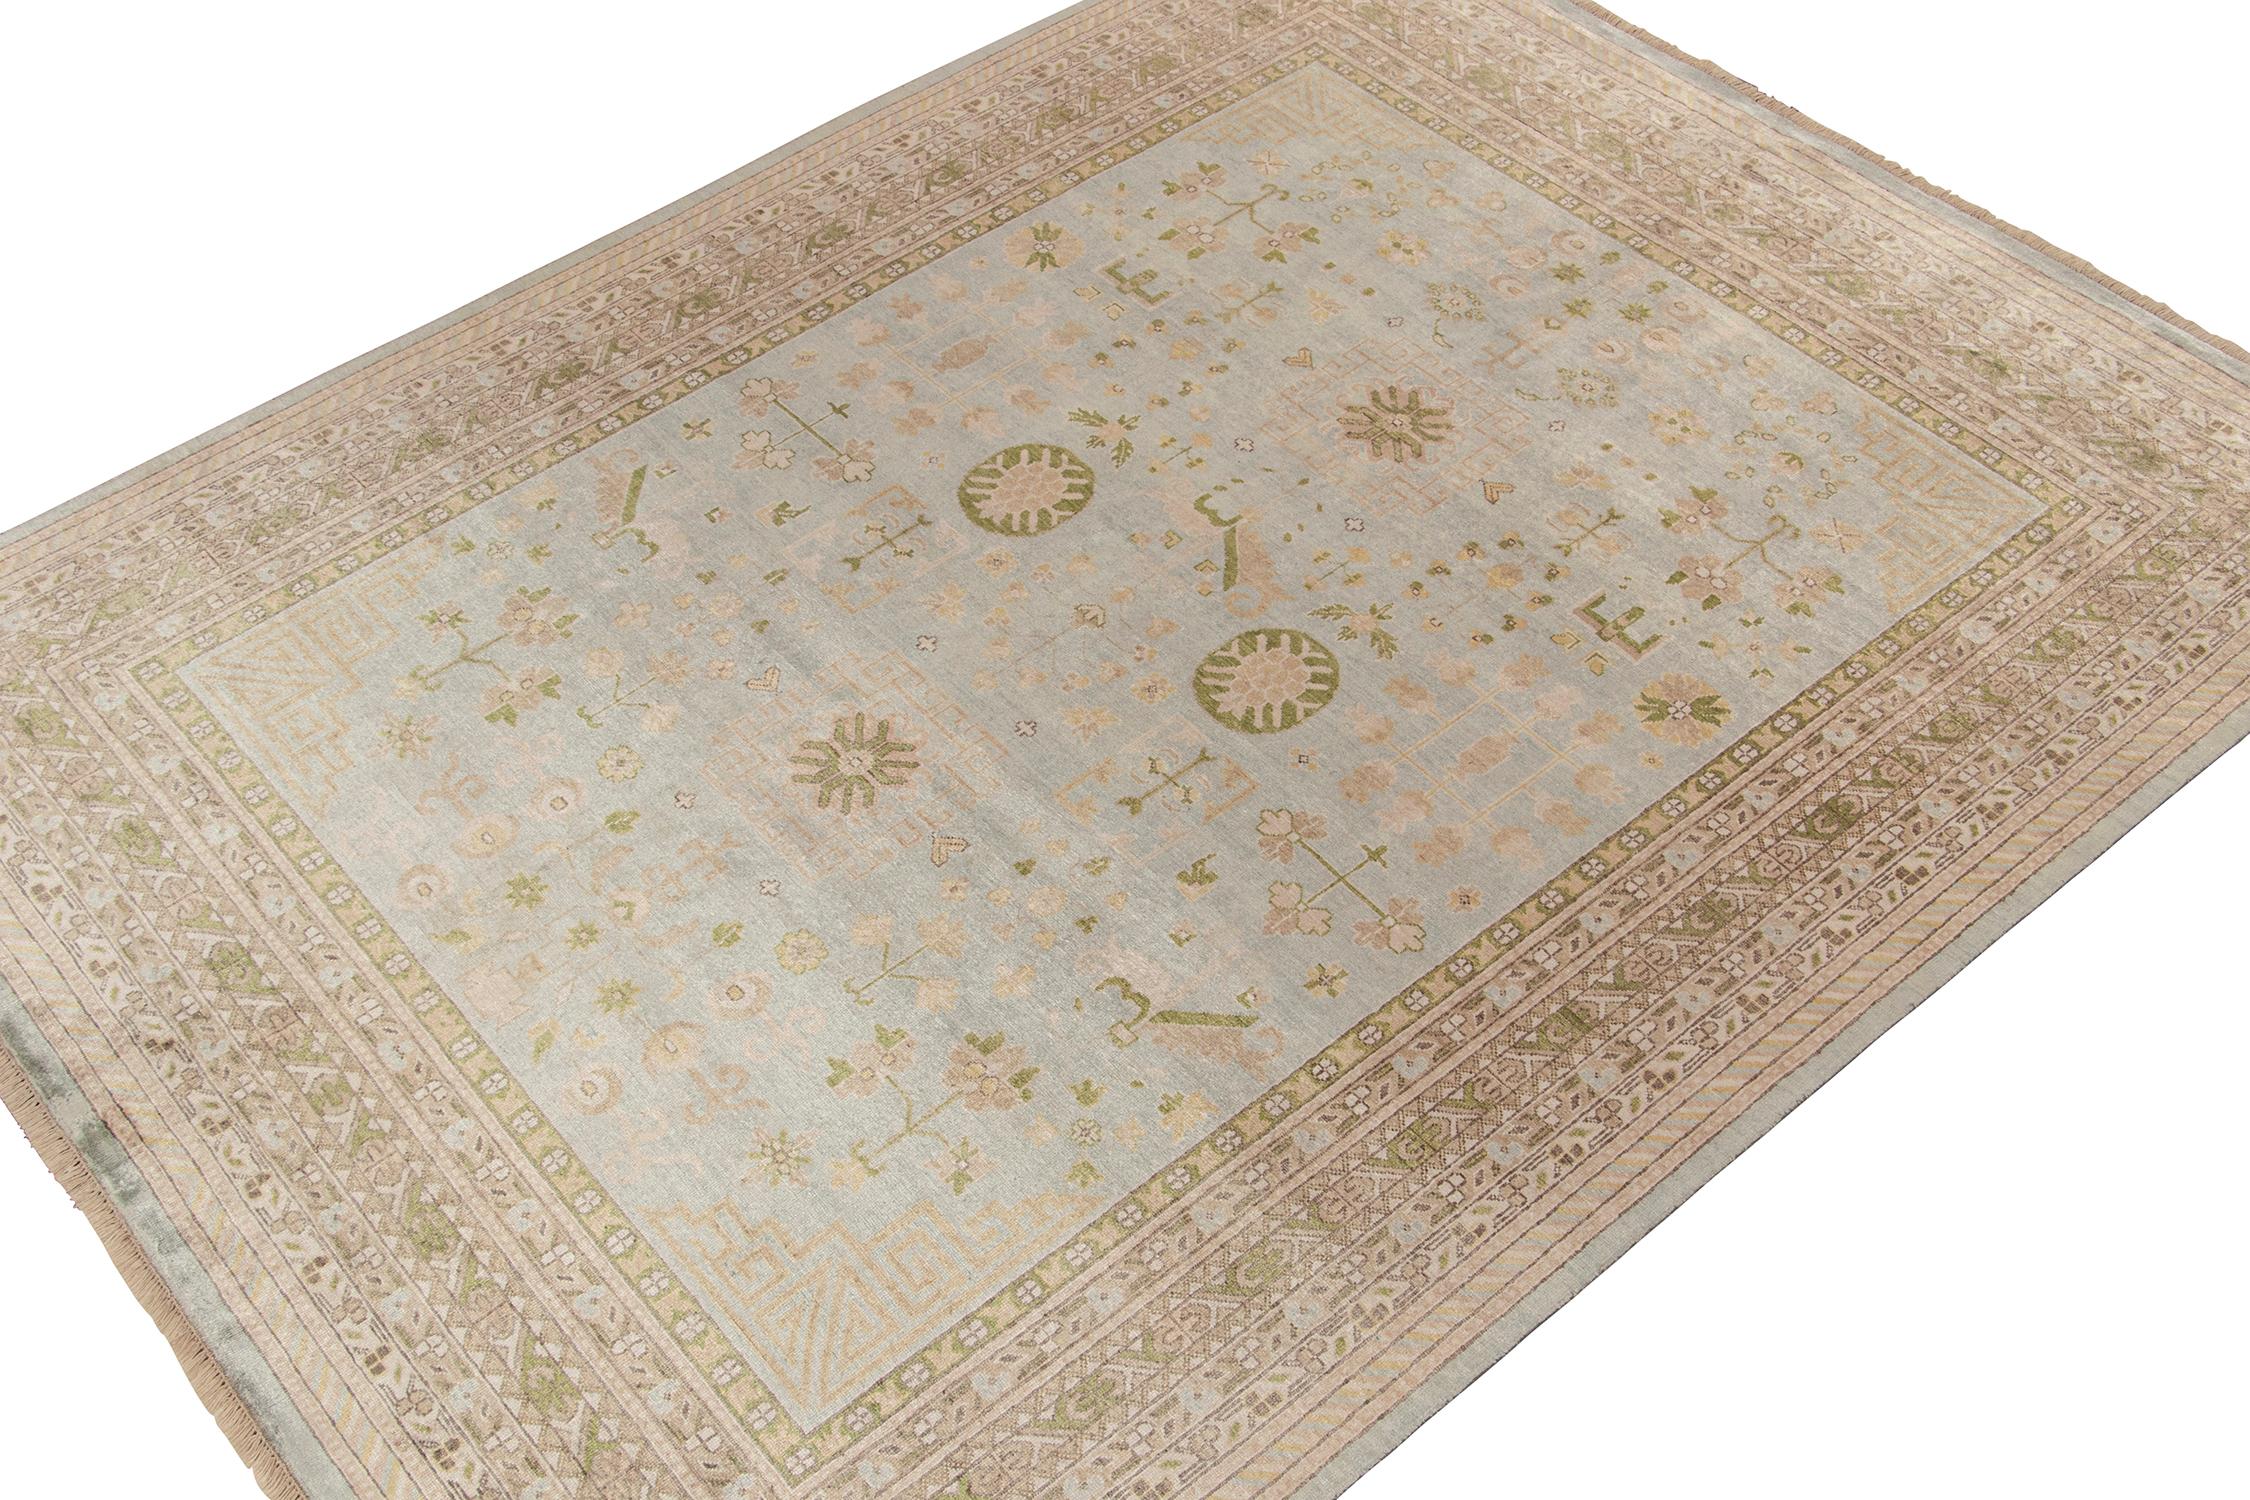 Un tapis 8x10 inspiré des styles de tapis Khotan anciens, de la collection Modern Classics de Rug & Kilim. Noué à la main en soie, jouant sur un bleu et un beige-marron exceptionnels dans des motifs géométriques.
Plus loin dans la conception :
Le